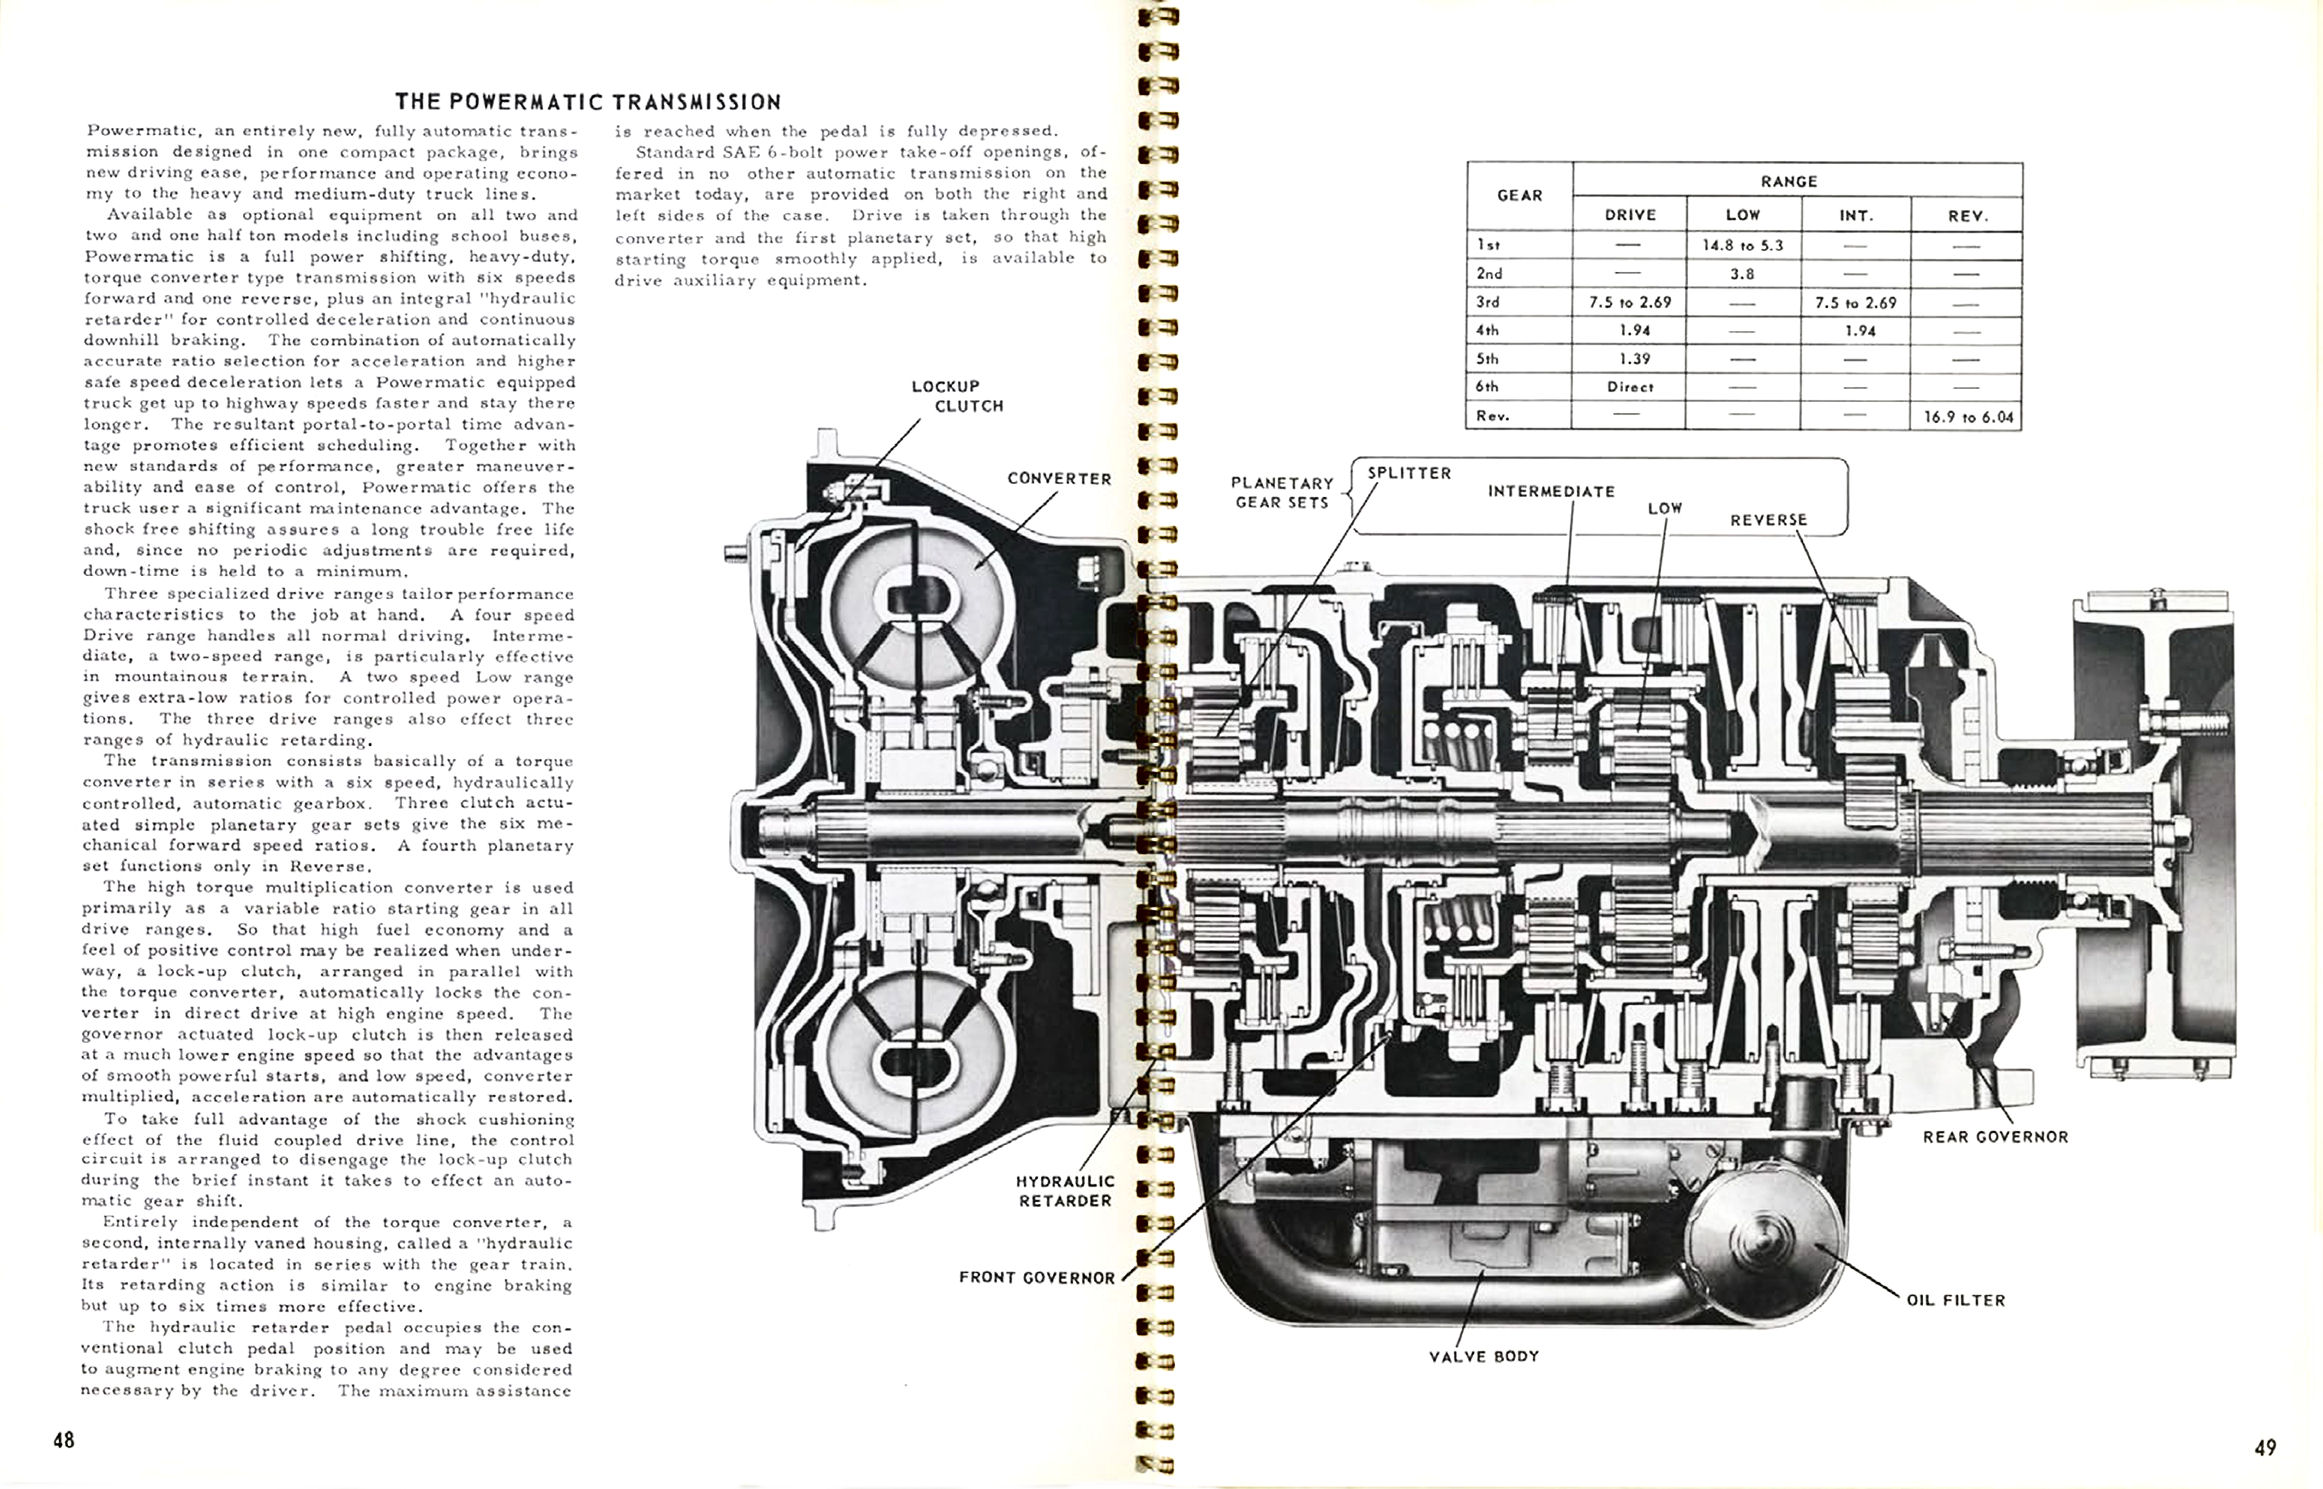 1956_Chevrolet_Truck_Engineering_Features-48-49